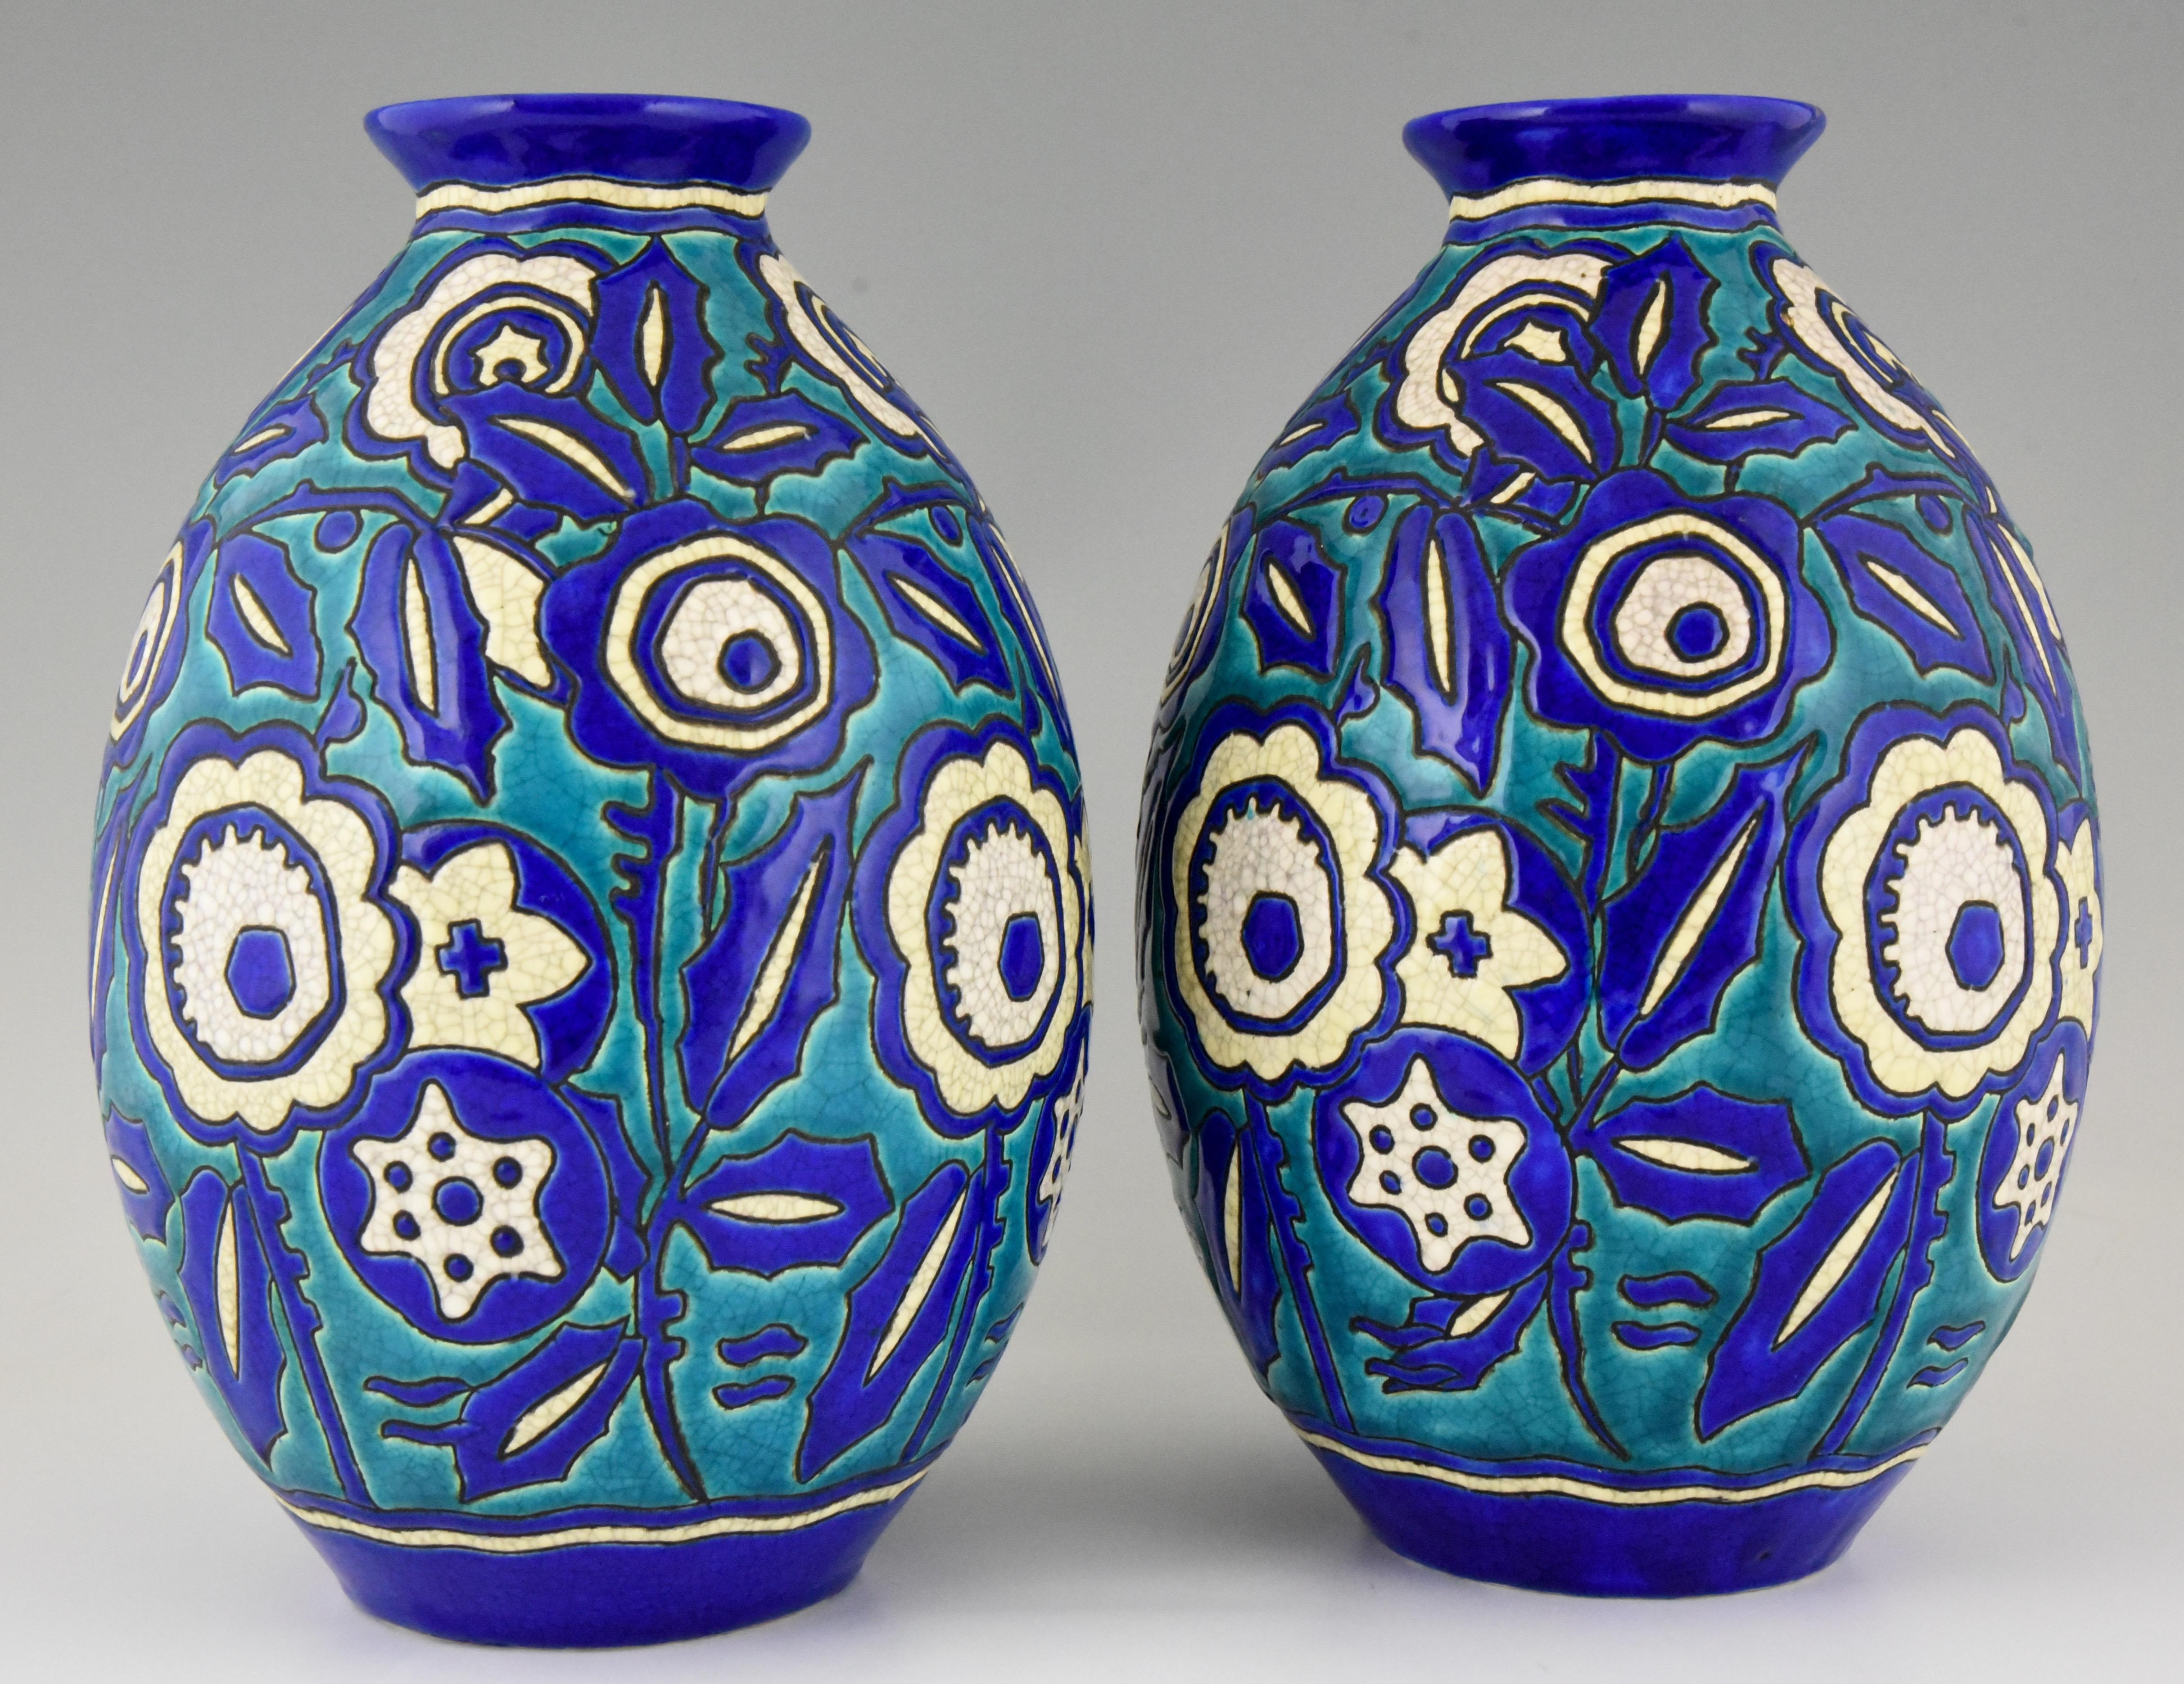 20th Century Pair of Art Deco Ceramic Craquelé Vases Flowers Charles Catteau for Keramis 1929